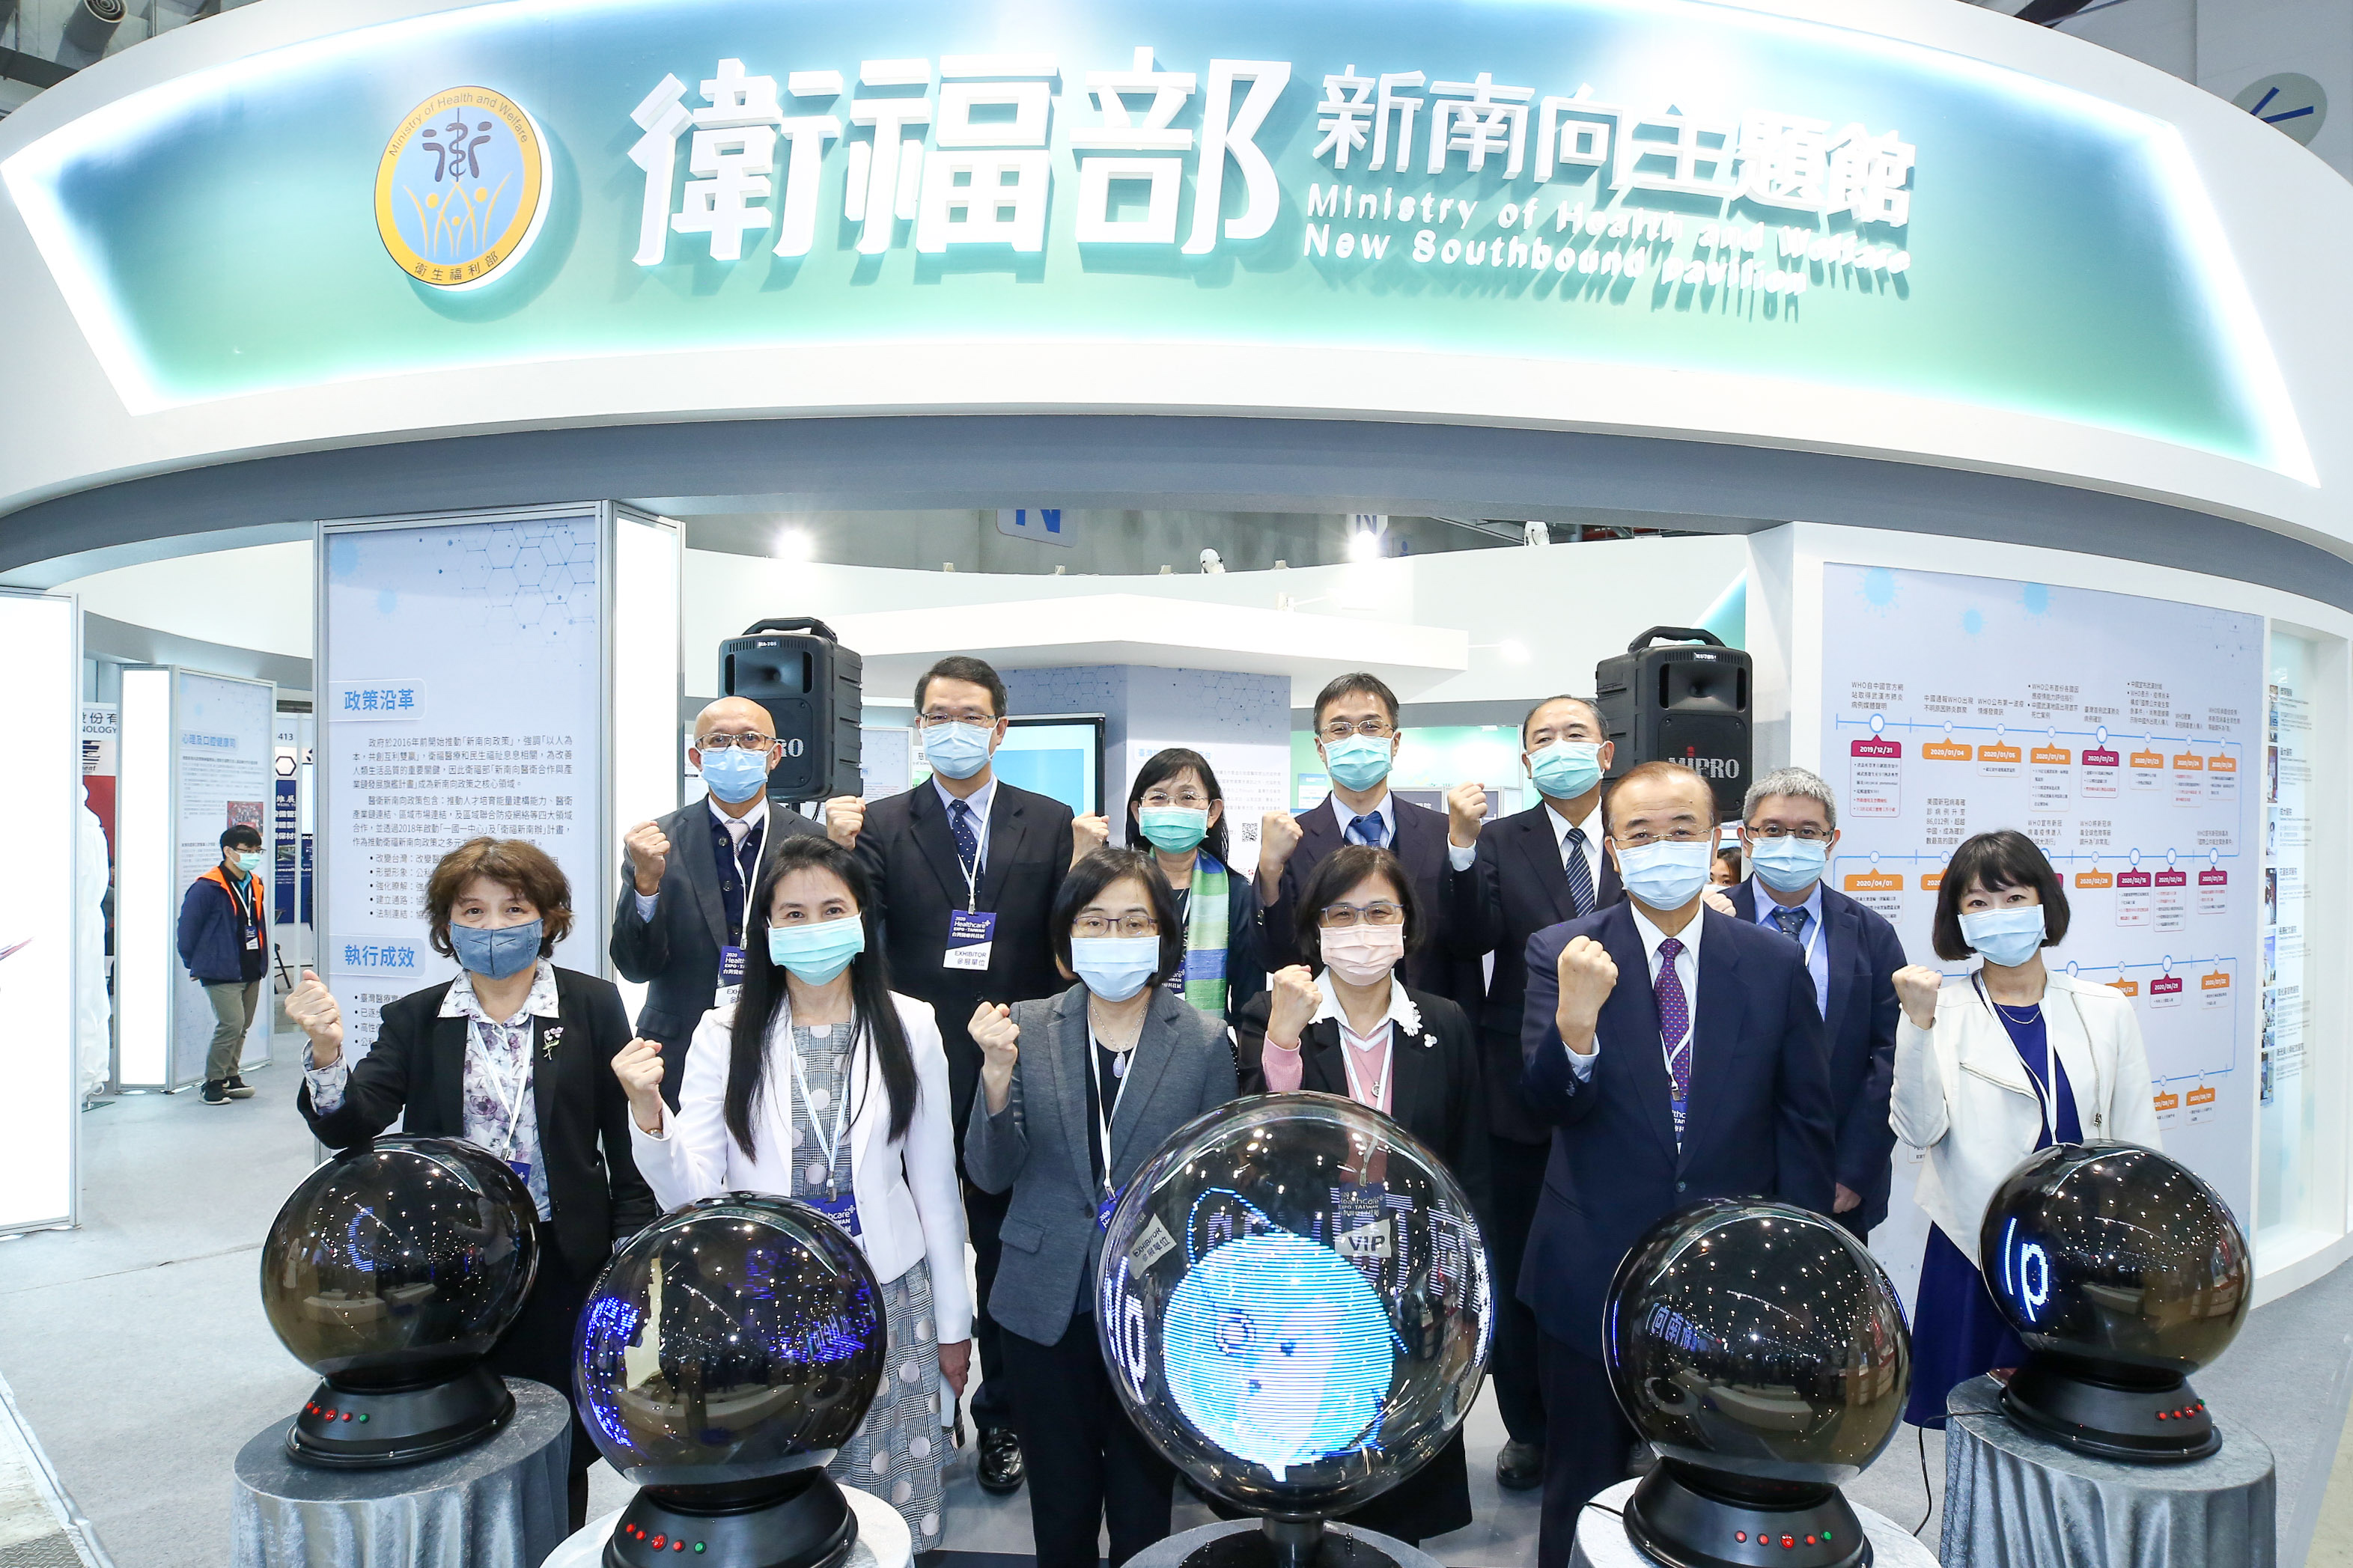 國家生技醫療產業策進會於2020年12月3日至6日舉辦2020台灣醫療科技展